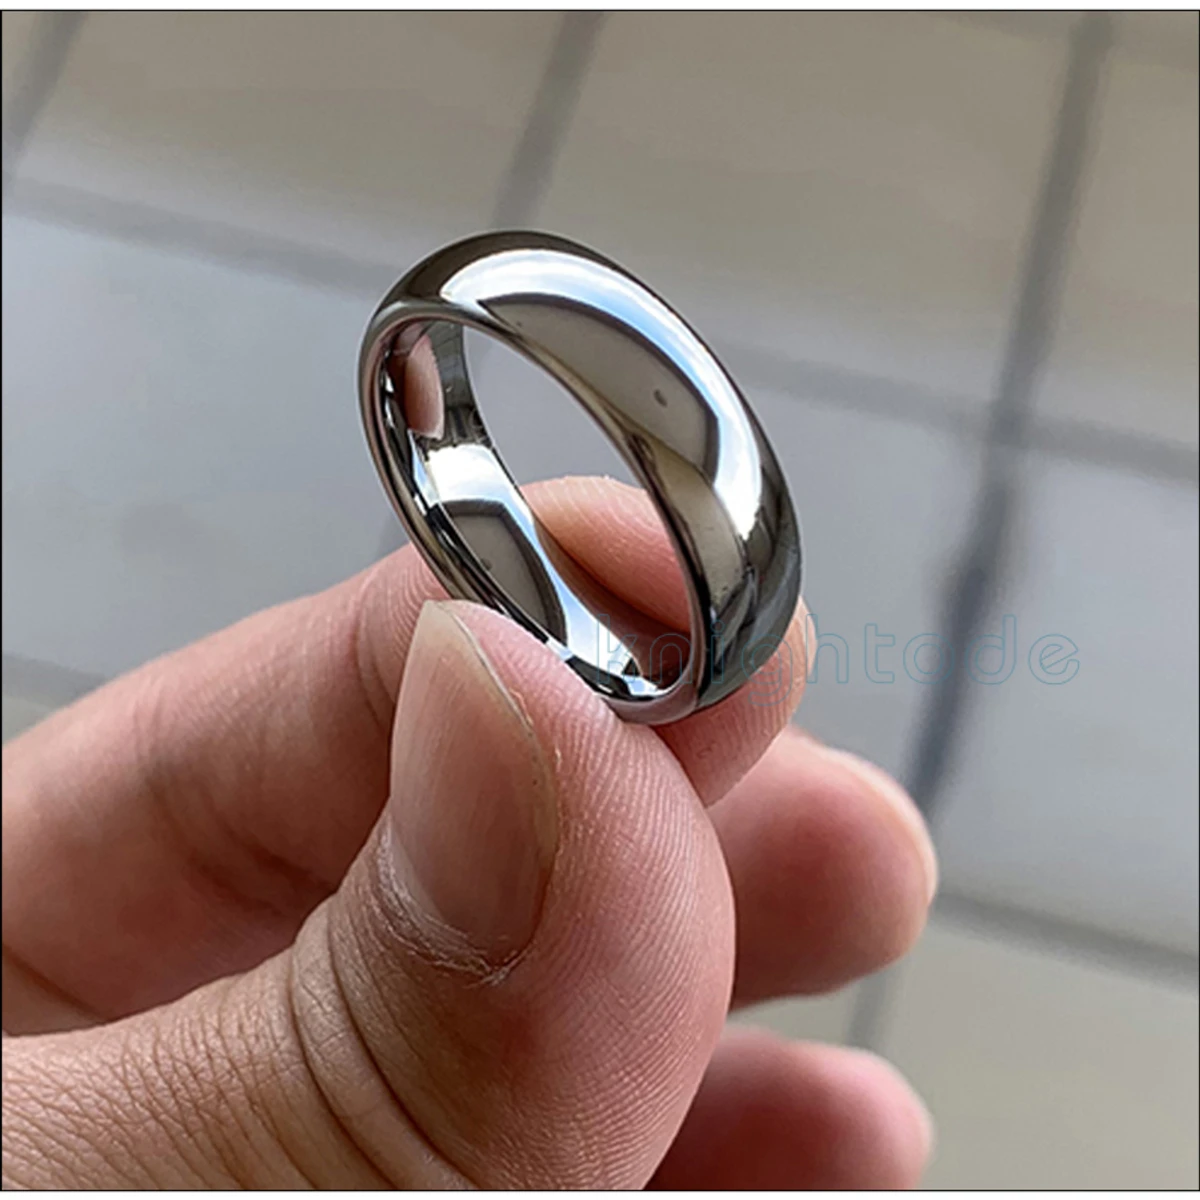 Fashionable New Stainless Steel Finger Ring For Men